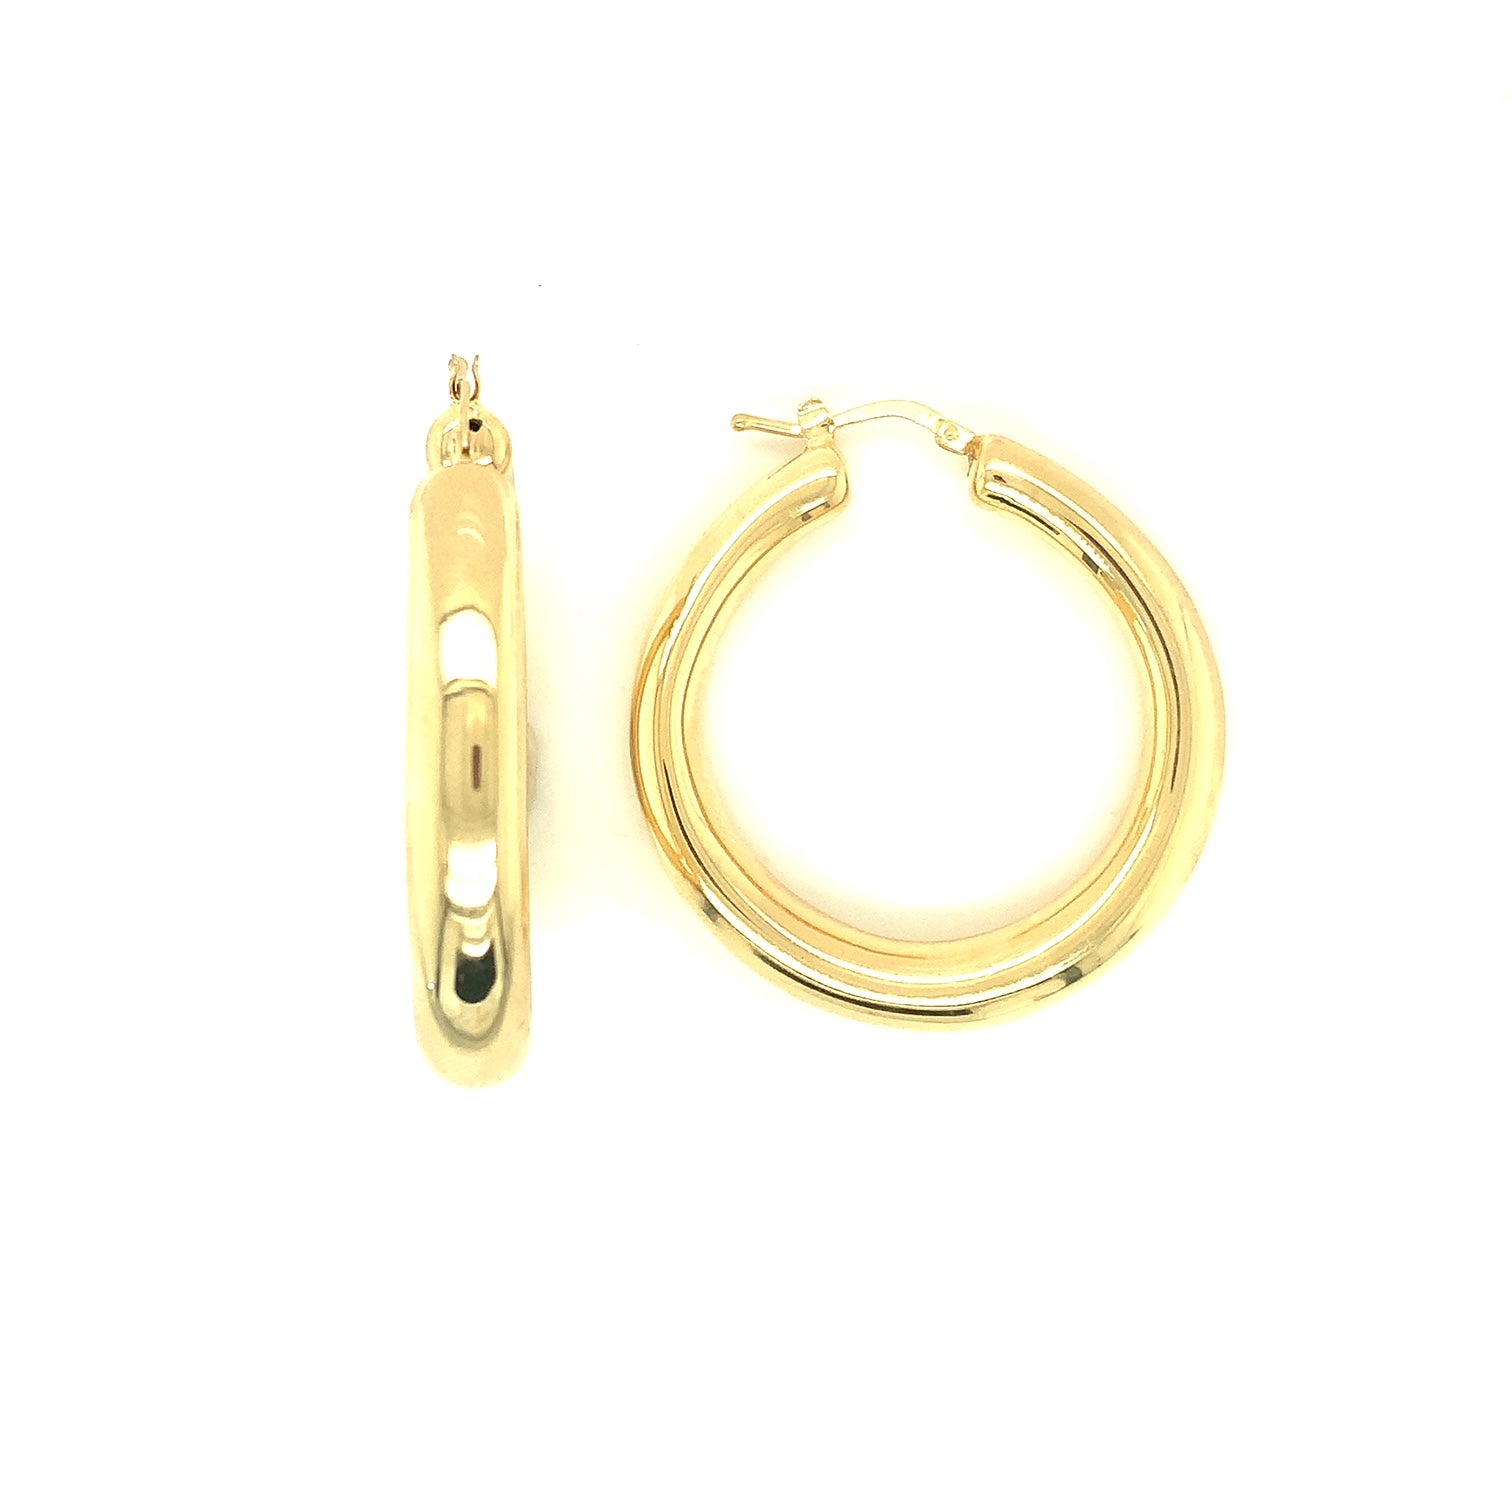 18k Yellow Gold Round Hoop Earrings by Lisa Nik